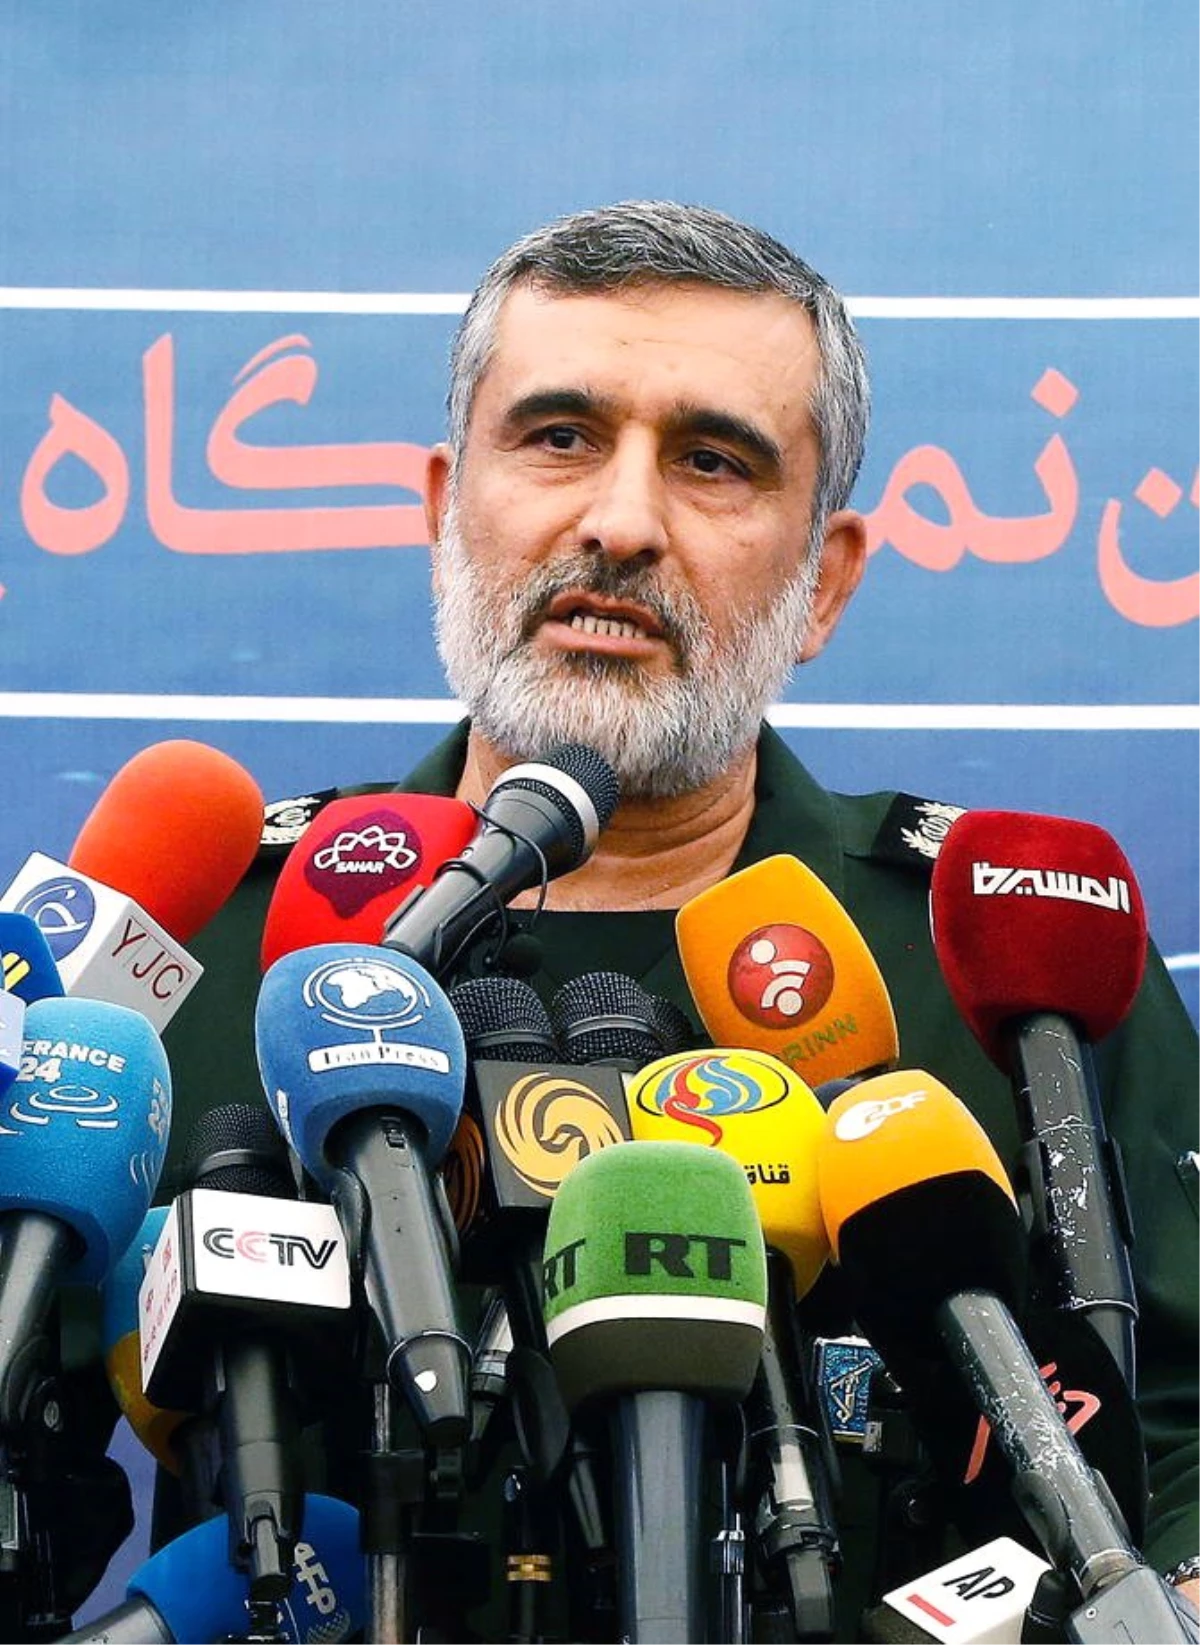 İran Hava Kuvvetleri Komutanı Hacızade: "Tüm sorumluluğu üzerime alıyorum"